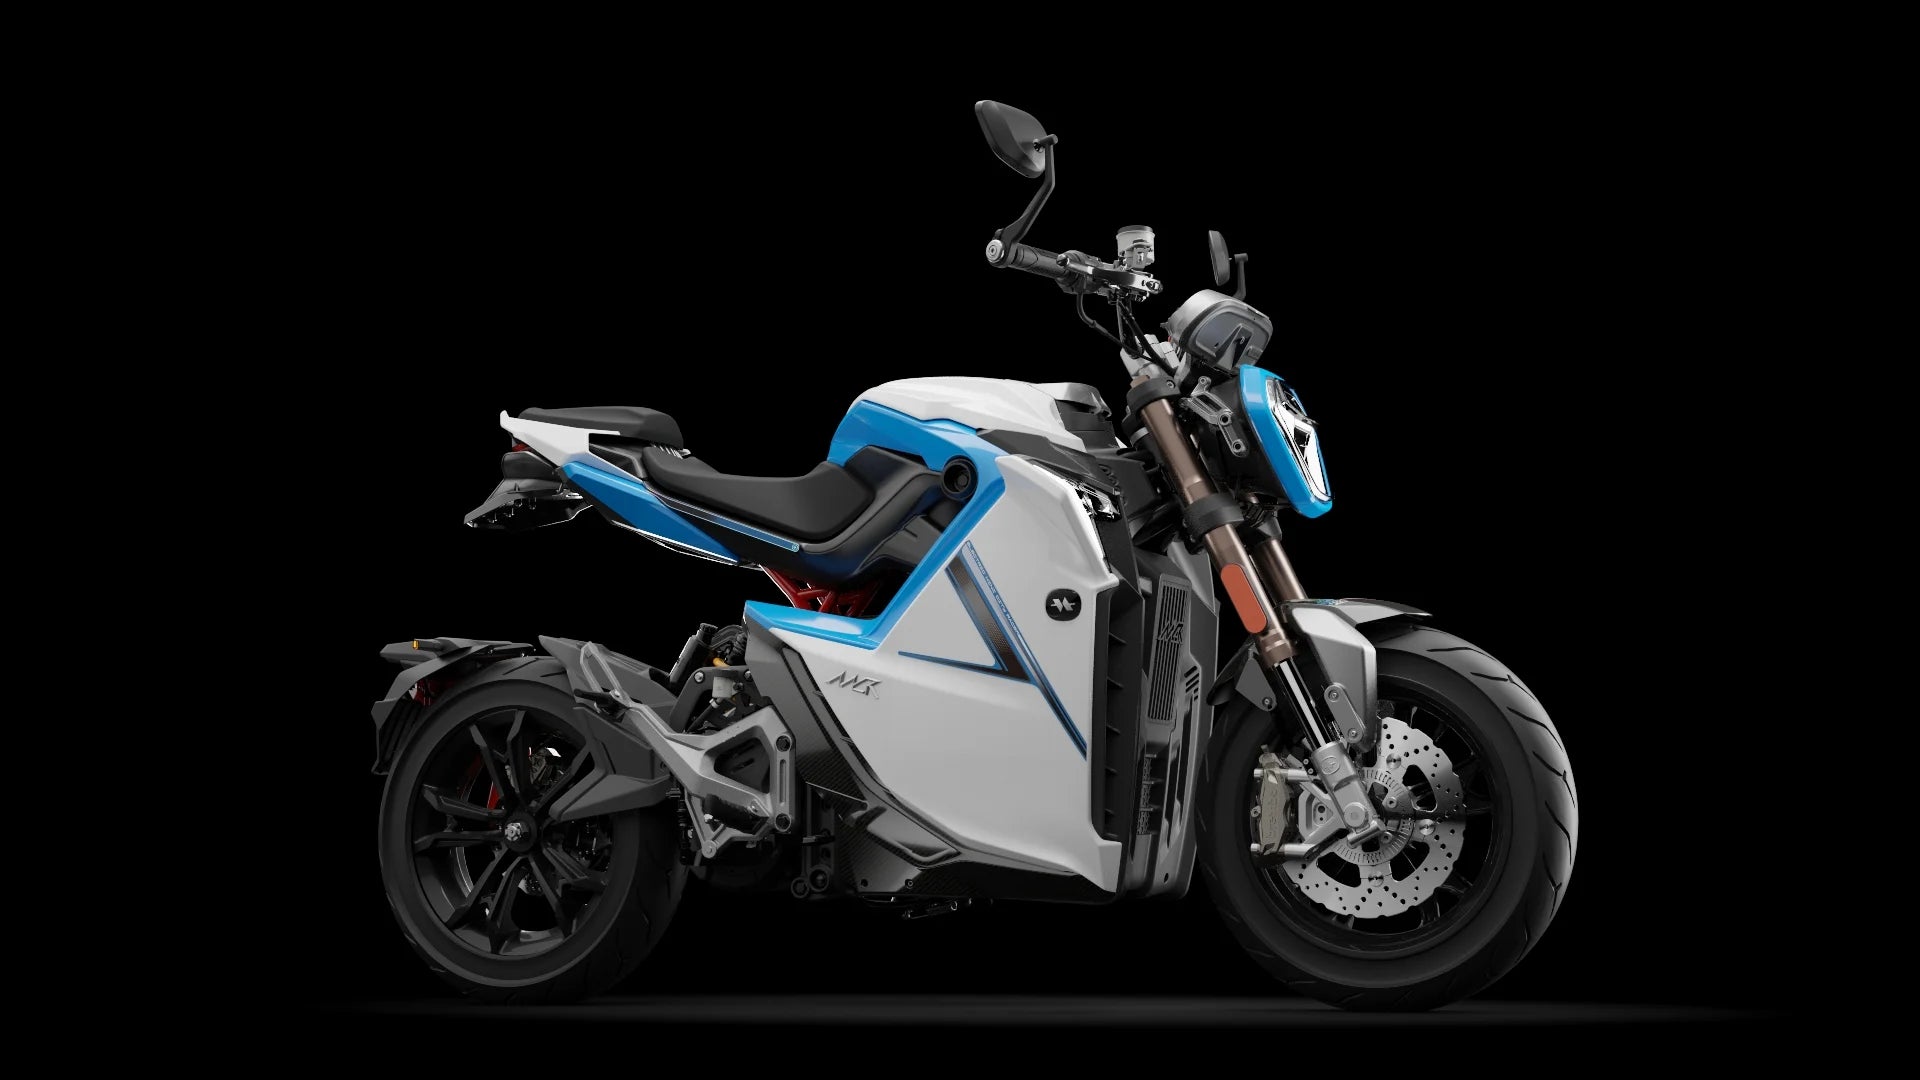 Moto électrique, OVAOBIKE MCR-M | 11 000 W | 125 cc | V-max 130 km/h | Autonomie 230 km - Atom Motors